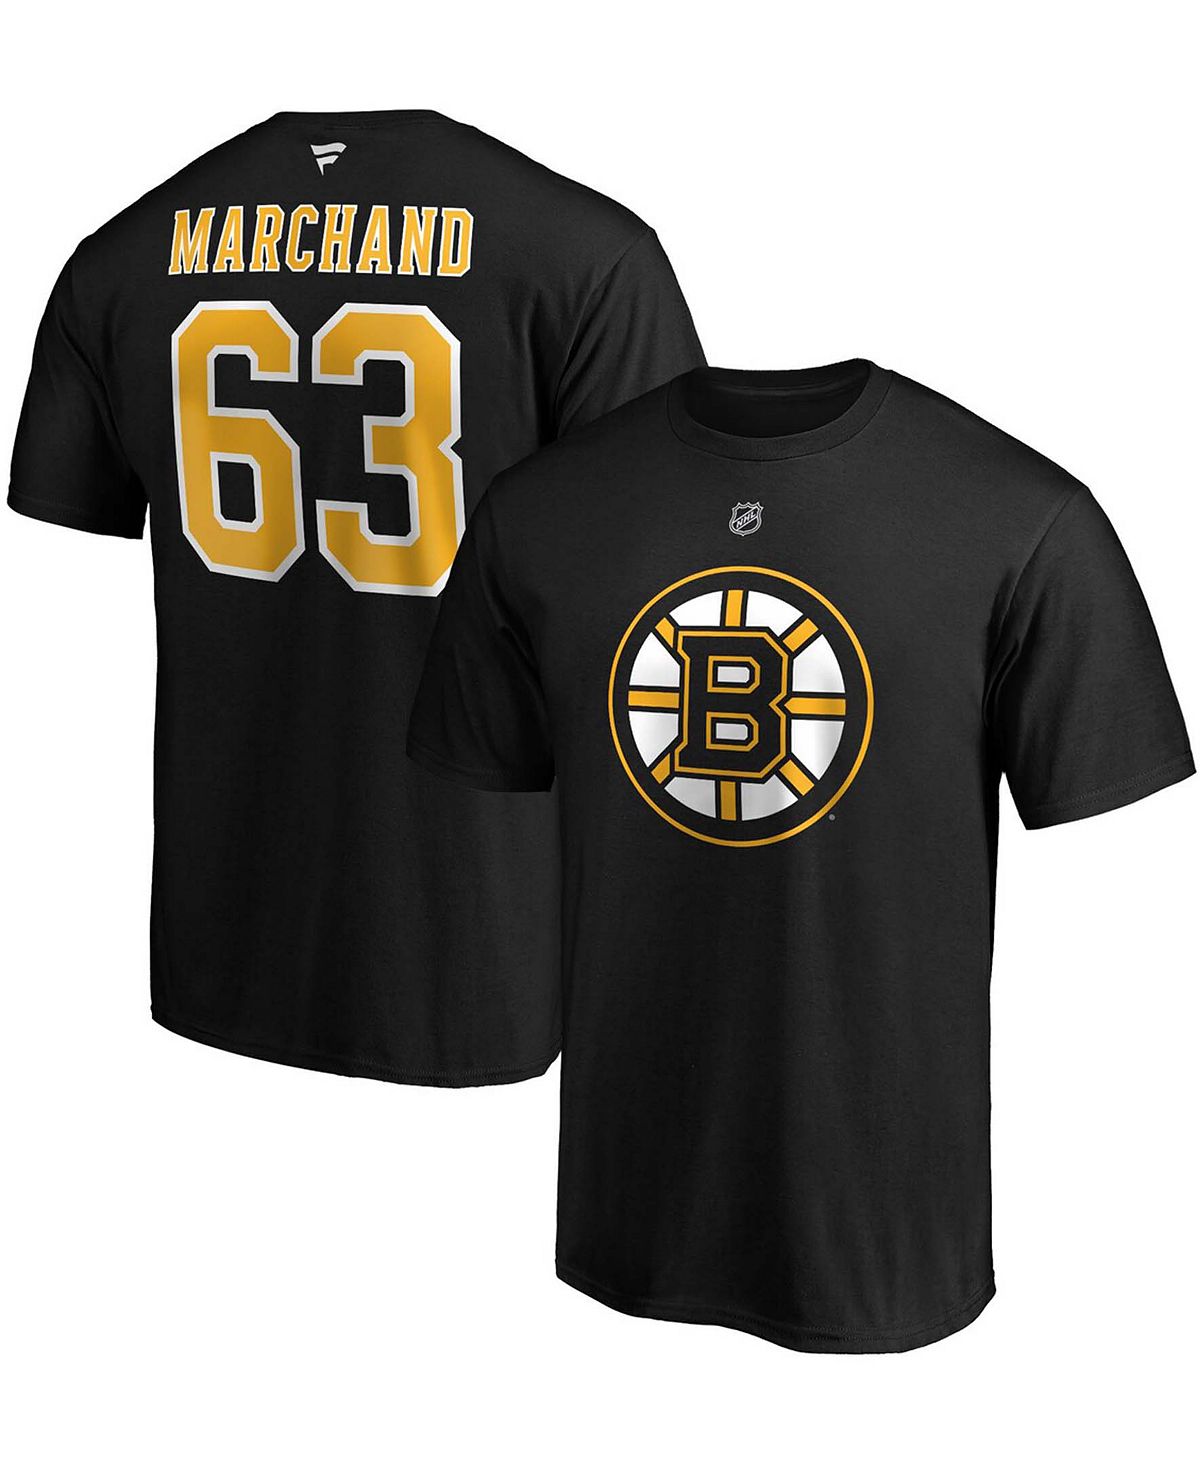 Фирменная мужская футболка brad marchand boston bruins team с аутентичным названием и номером стека Fanatics, черный printio 3d кружка boston bruins